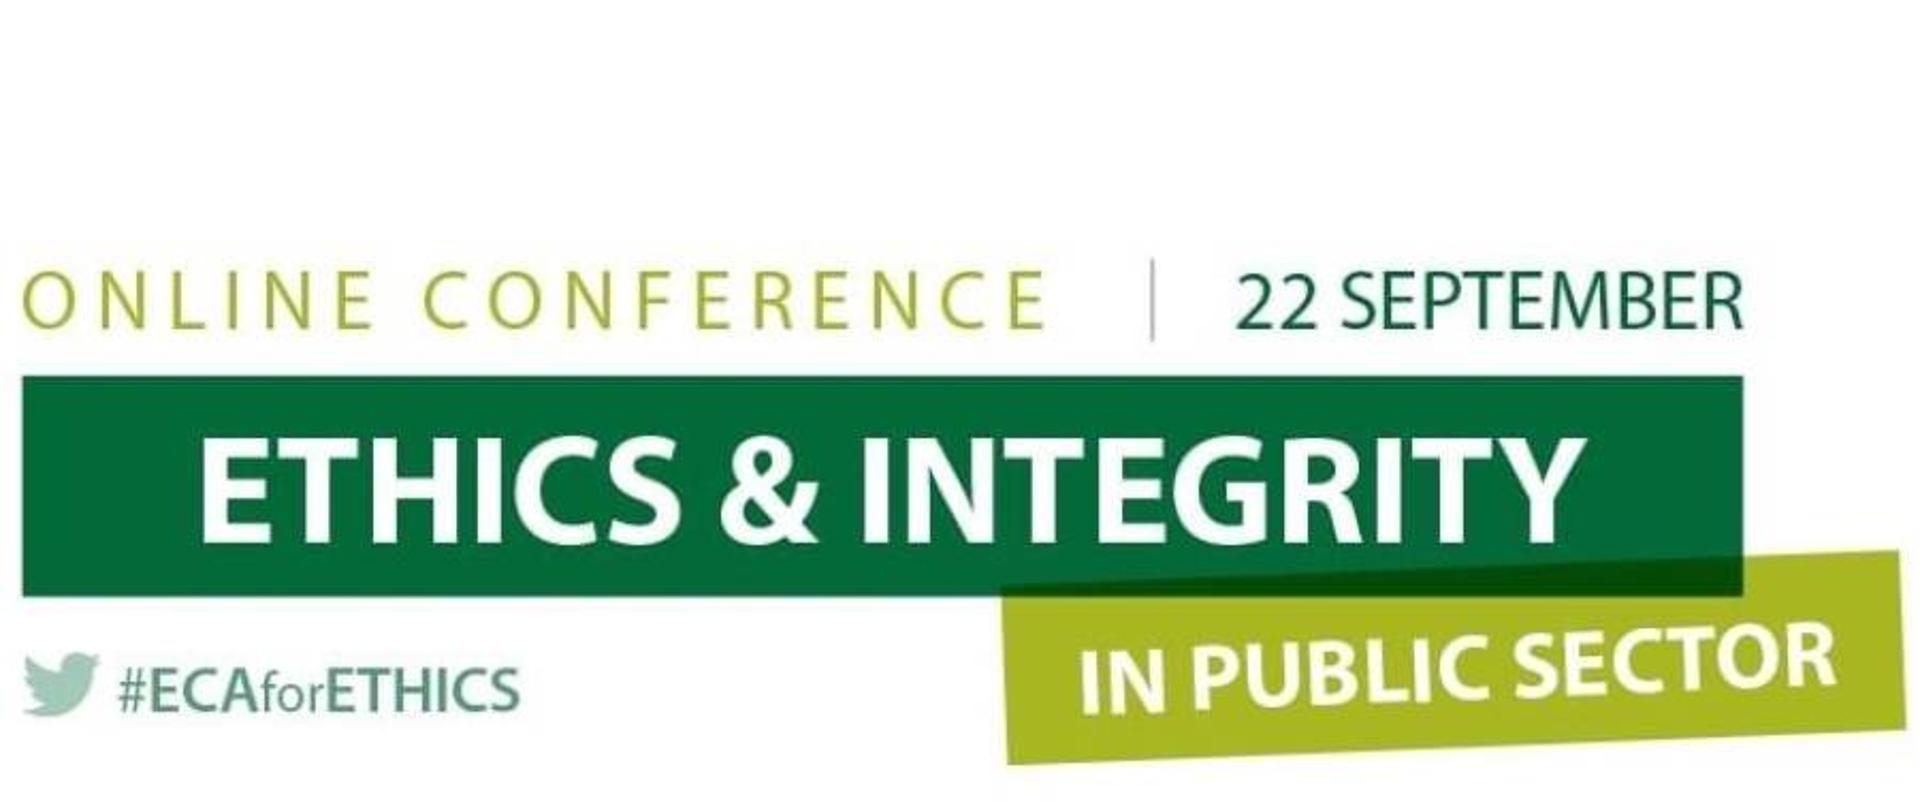 Logo konferencji online "Ethics & integrity in public sector, pośrodku data konferencji - 22 września, w lewym dolnym rogu nazwa organizatora - ECA for Ethics